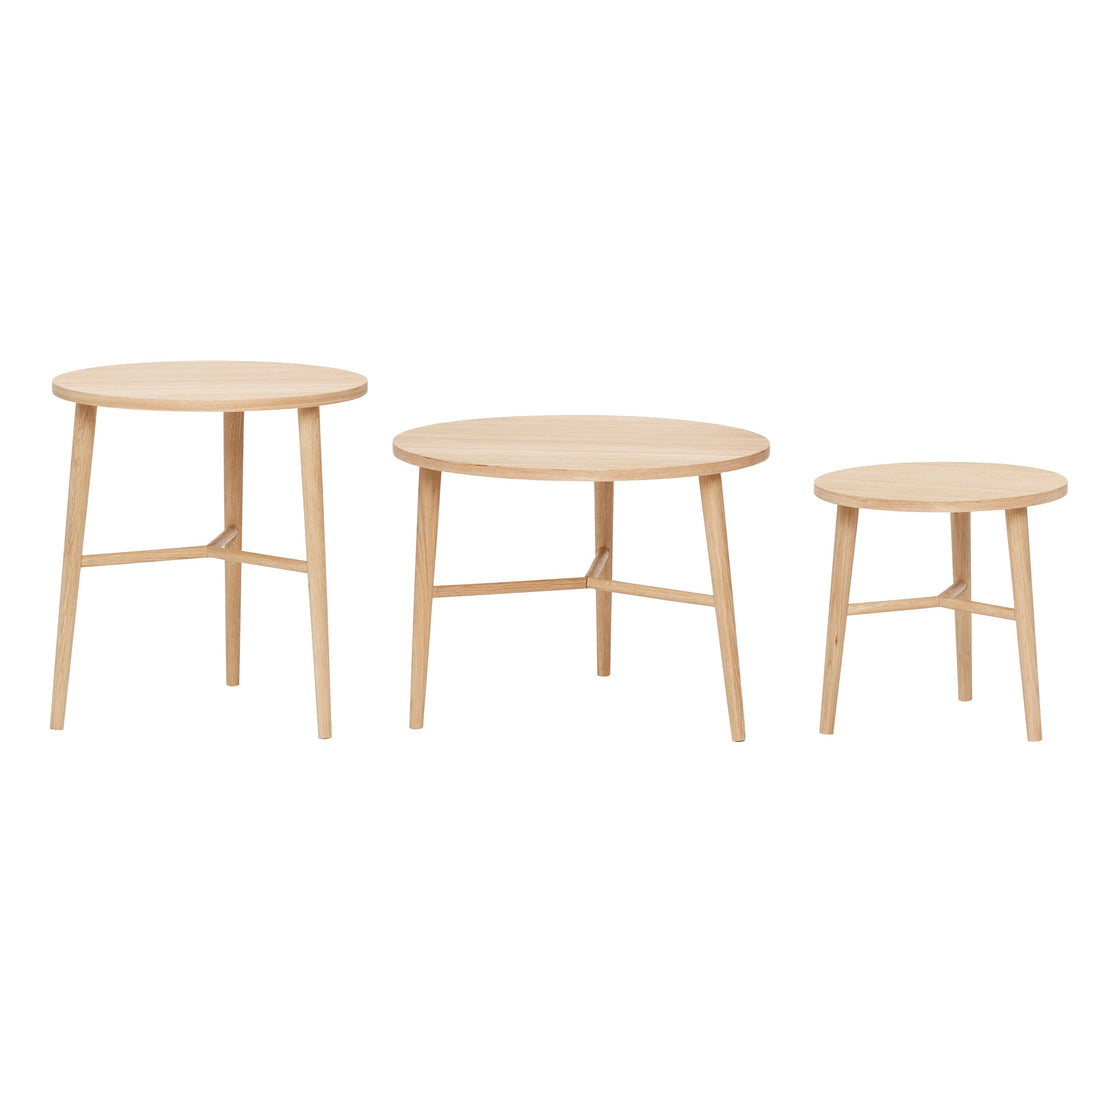 Hübsch - Tisch, Runde, Eiche, FSC, Natur, s/3 - Ø40xh40, Ø50xH55, Ø60xh50 cm